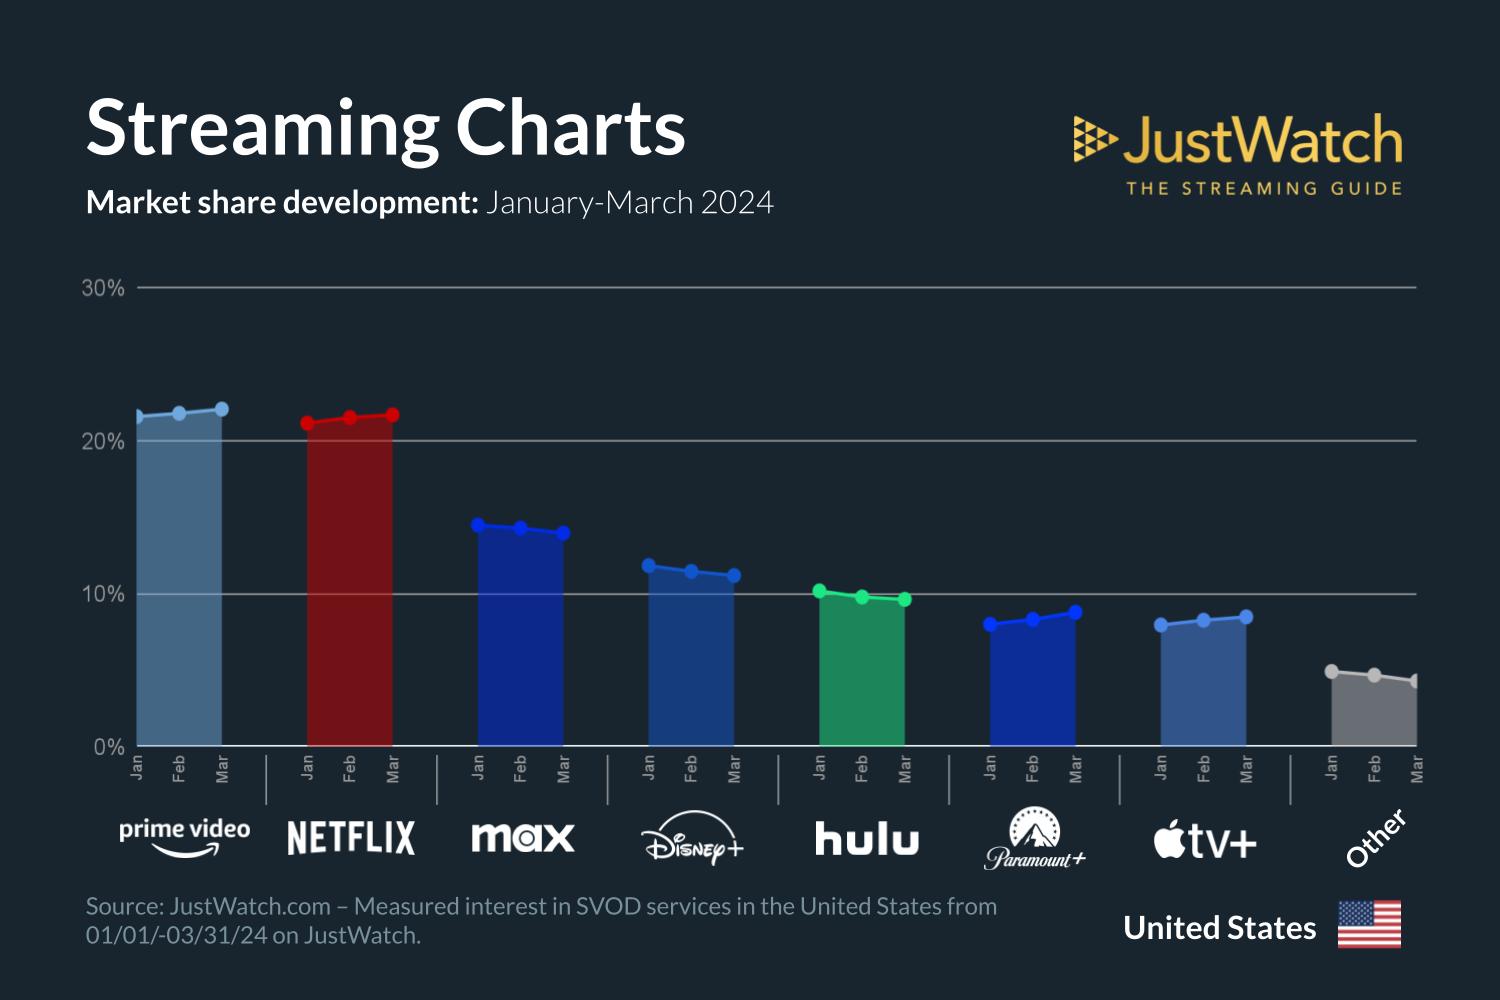 La part d'Apple TV+ augmente aux États-Unis, mais reste à la traîne par rapport à ses concurrents